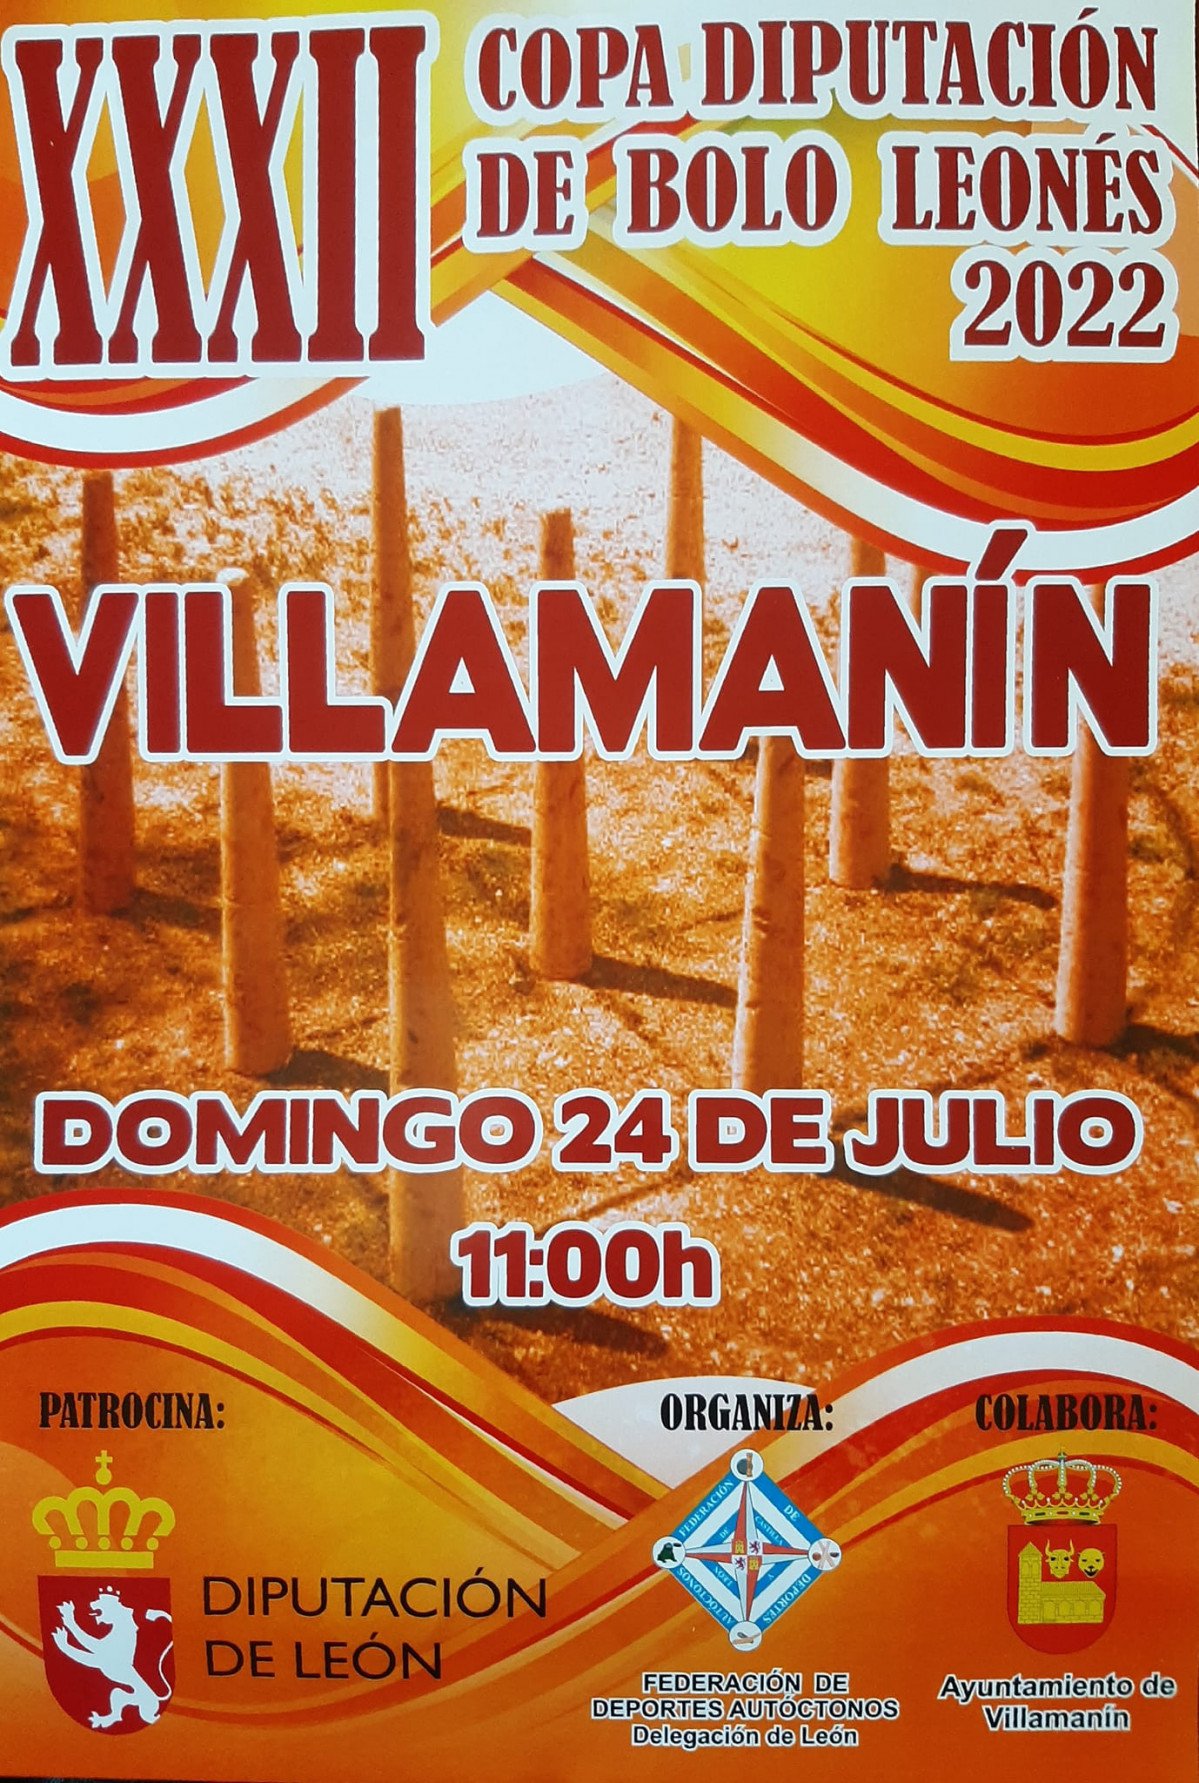 Villamanín acoge la Copa Diputación 2022 de bolo leonés